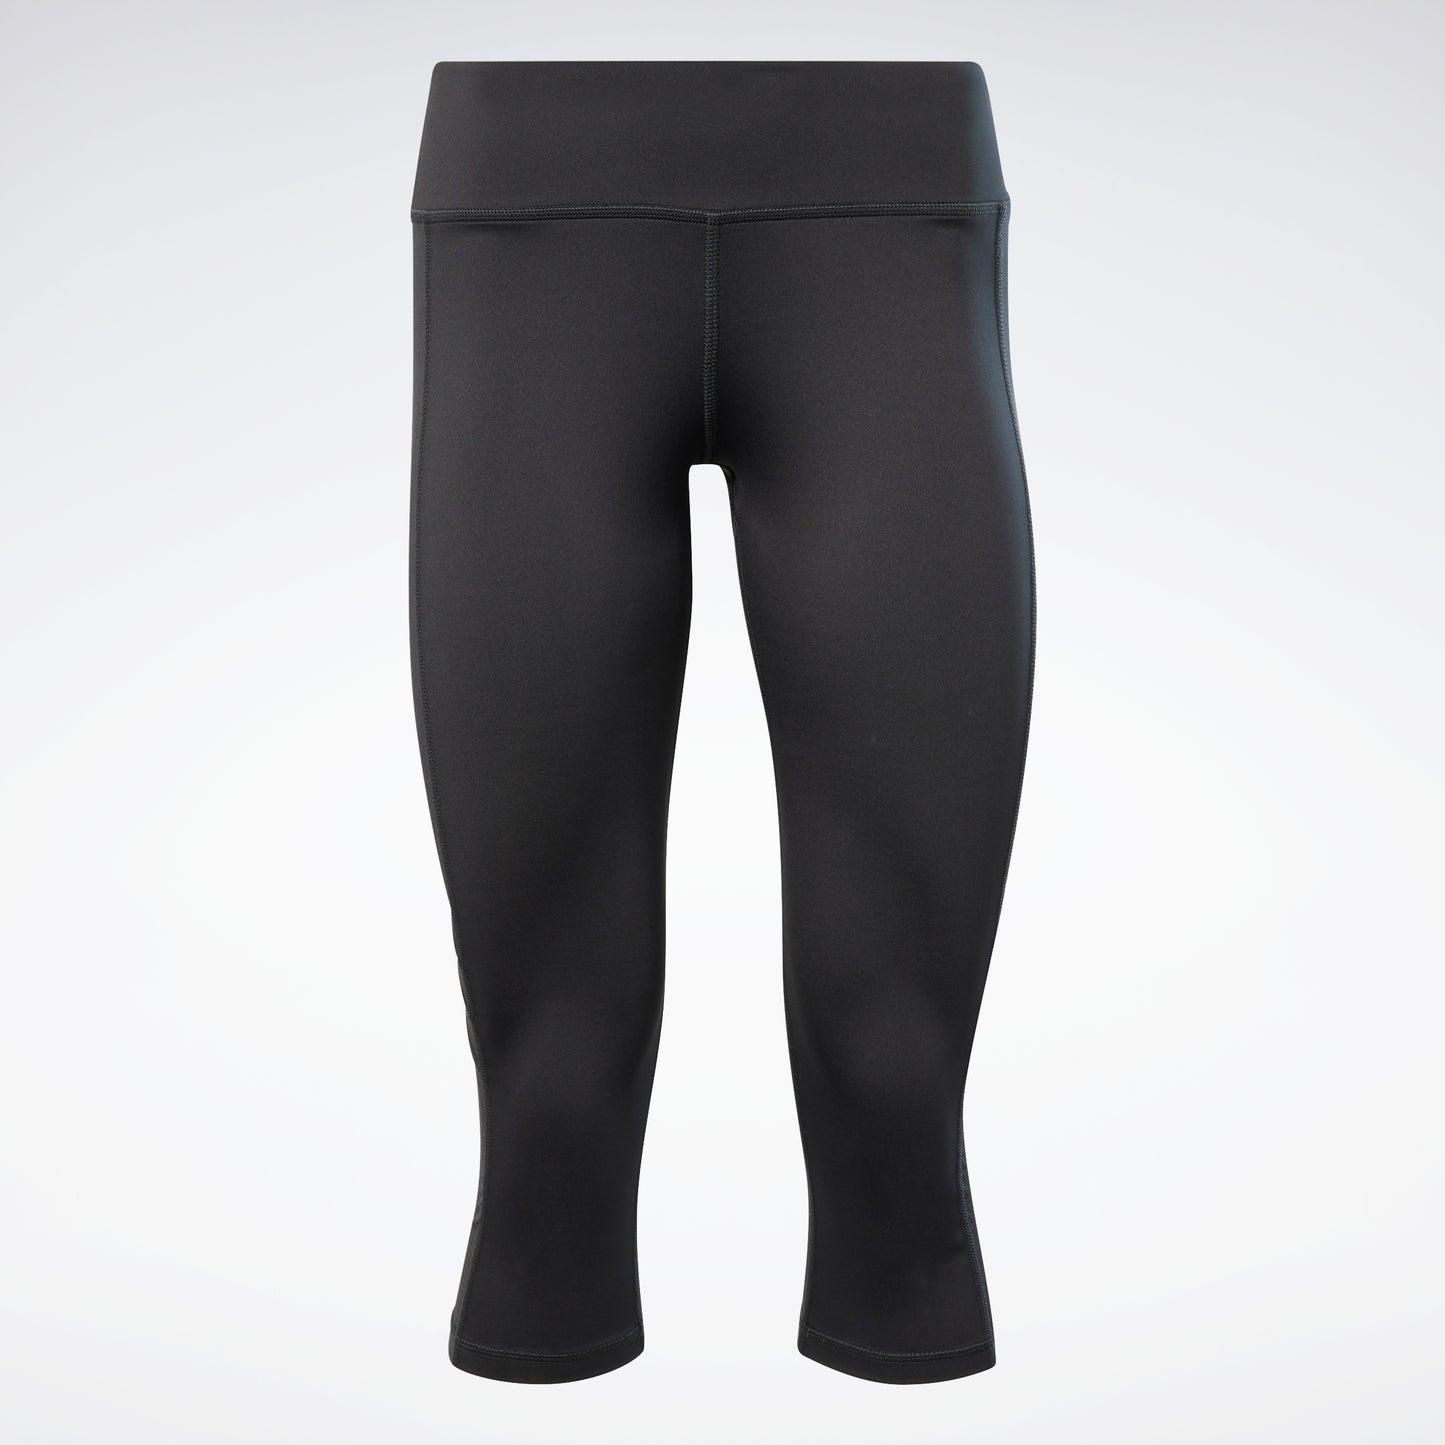 Reebok Women's Workout Ready Basic Capri Leggings (Plus Size)